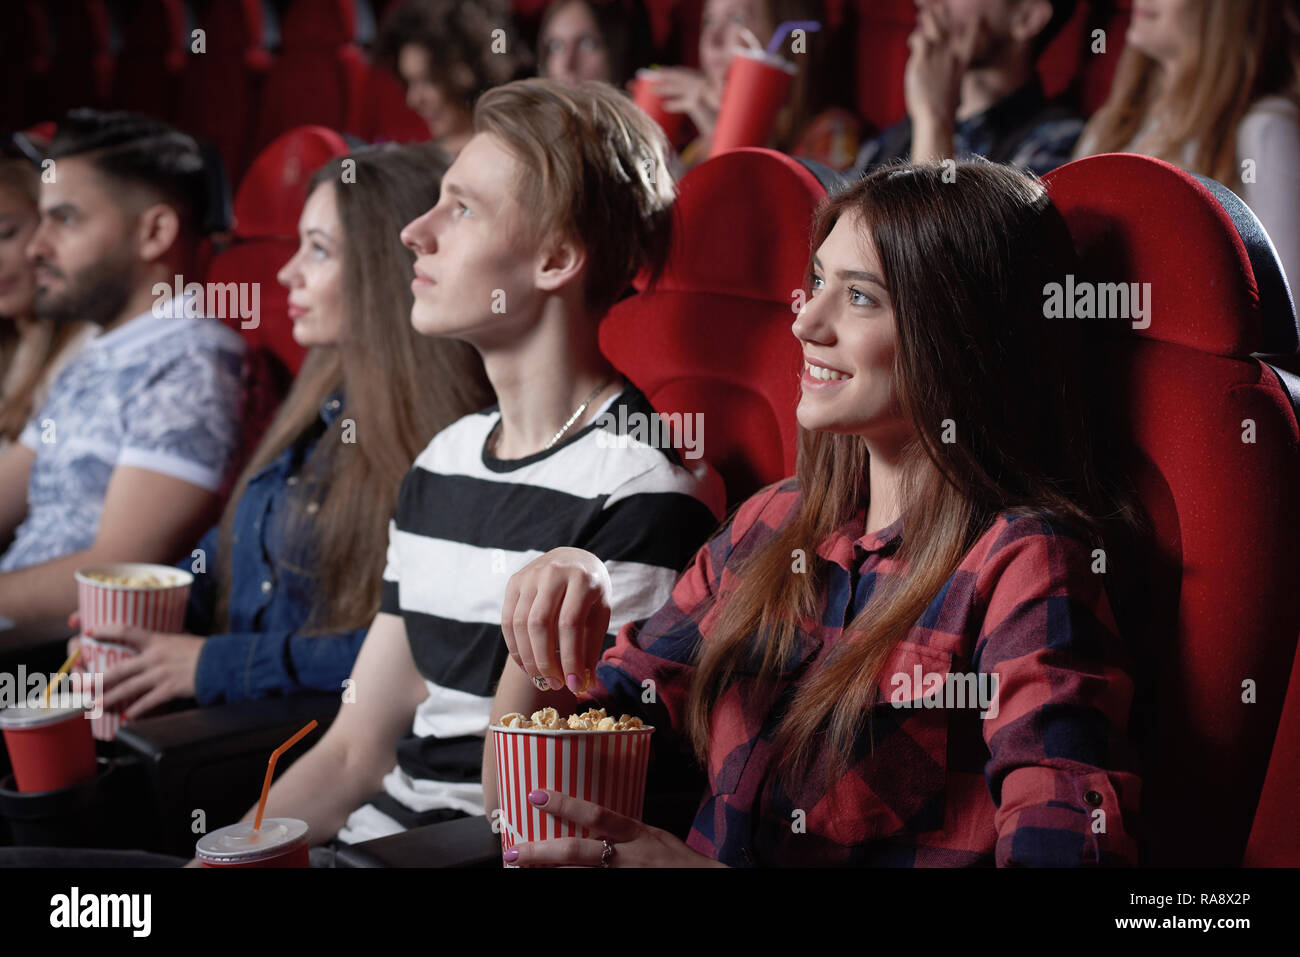 Voir du côté de la belle jeune fille aux cheveux noirs en chemise rouge profiter regarder des films intéressants au cinéma. Jolie femme spectateur assis près de garçon blond et eating popcorn de red cup. Banque D'Images